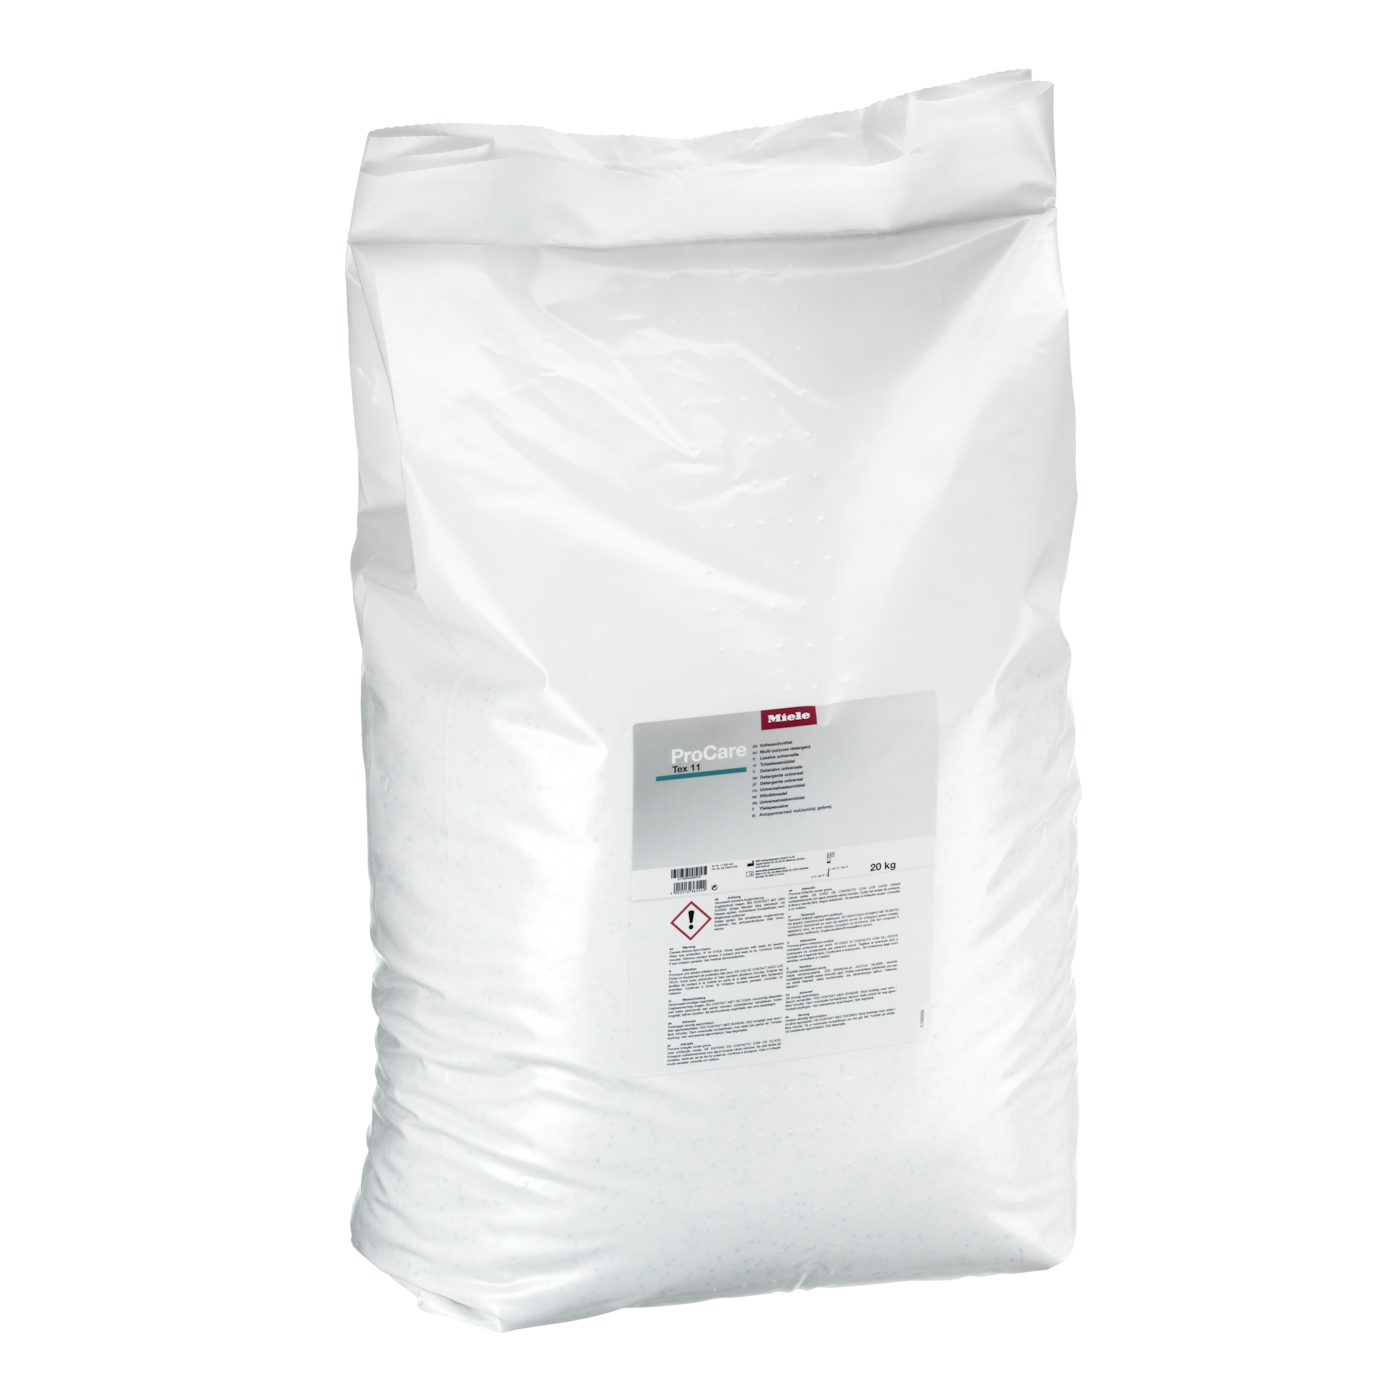 ProCare Tex 11 - 20 kg - Απορρυπαντικό πολλαπλών χρήσεων, σε σκόνη, αλκαλικό, 20 kg 